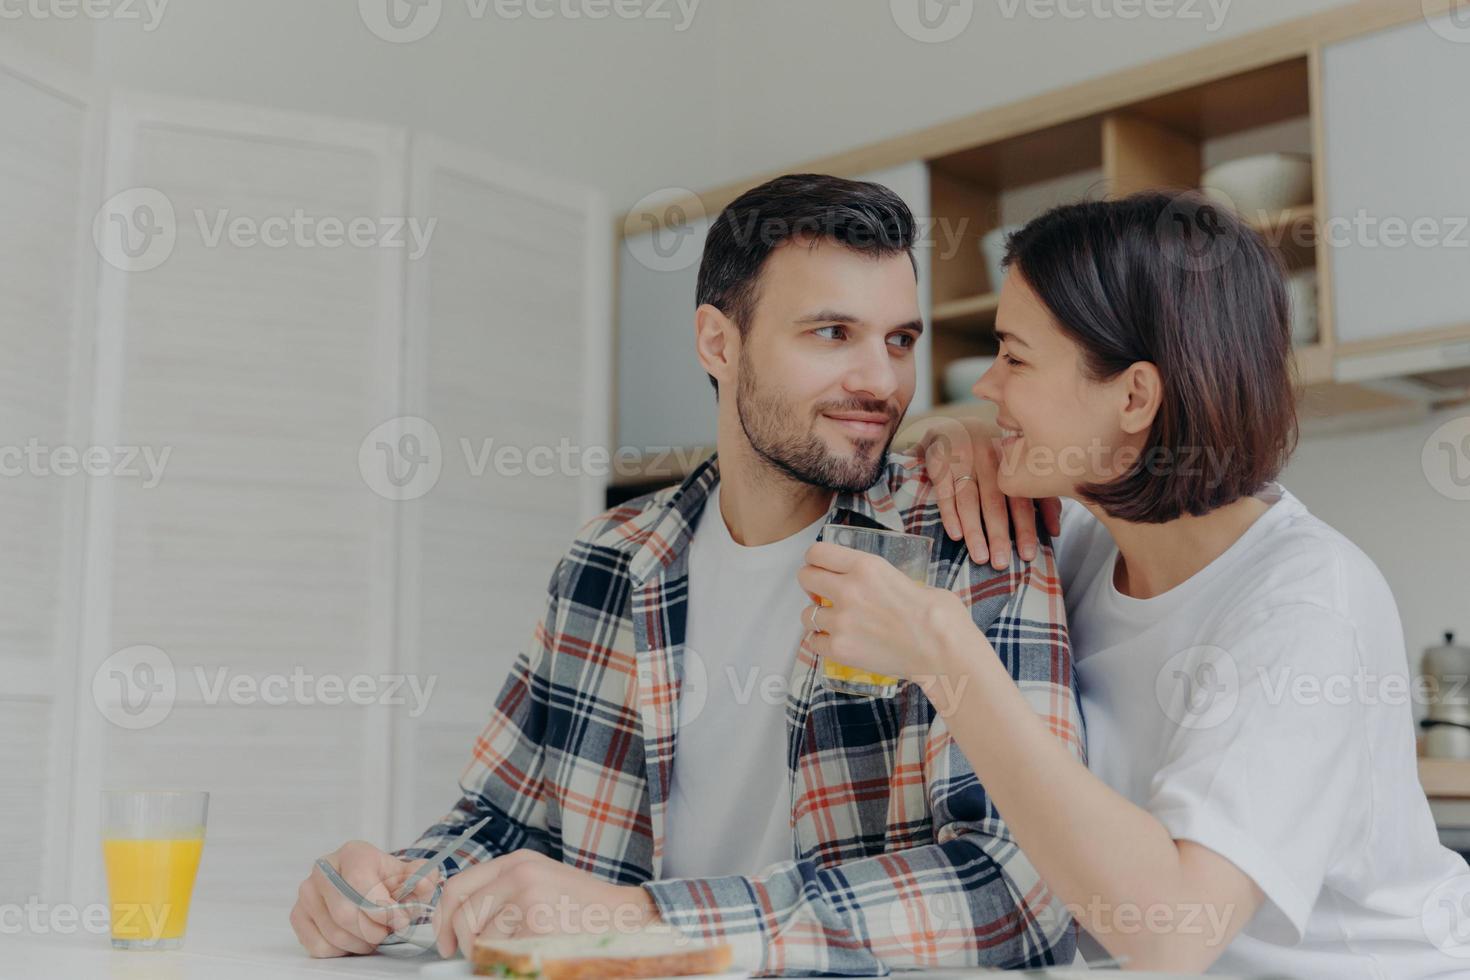 härliga par tittar på varandra med kärlek, kvinnan håller ett glas juice, poserar tillsammans nära köksbordet, pratar trevligt under frukosten, njut av hemlig atmosfär. lycklig familj koncept foto